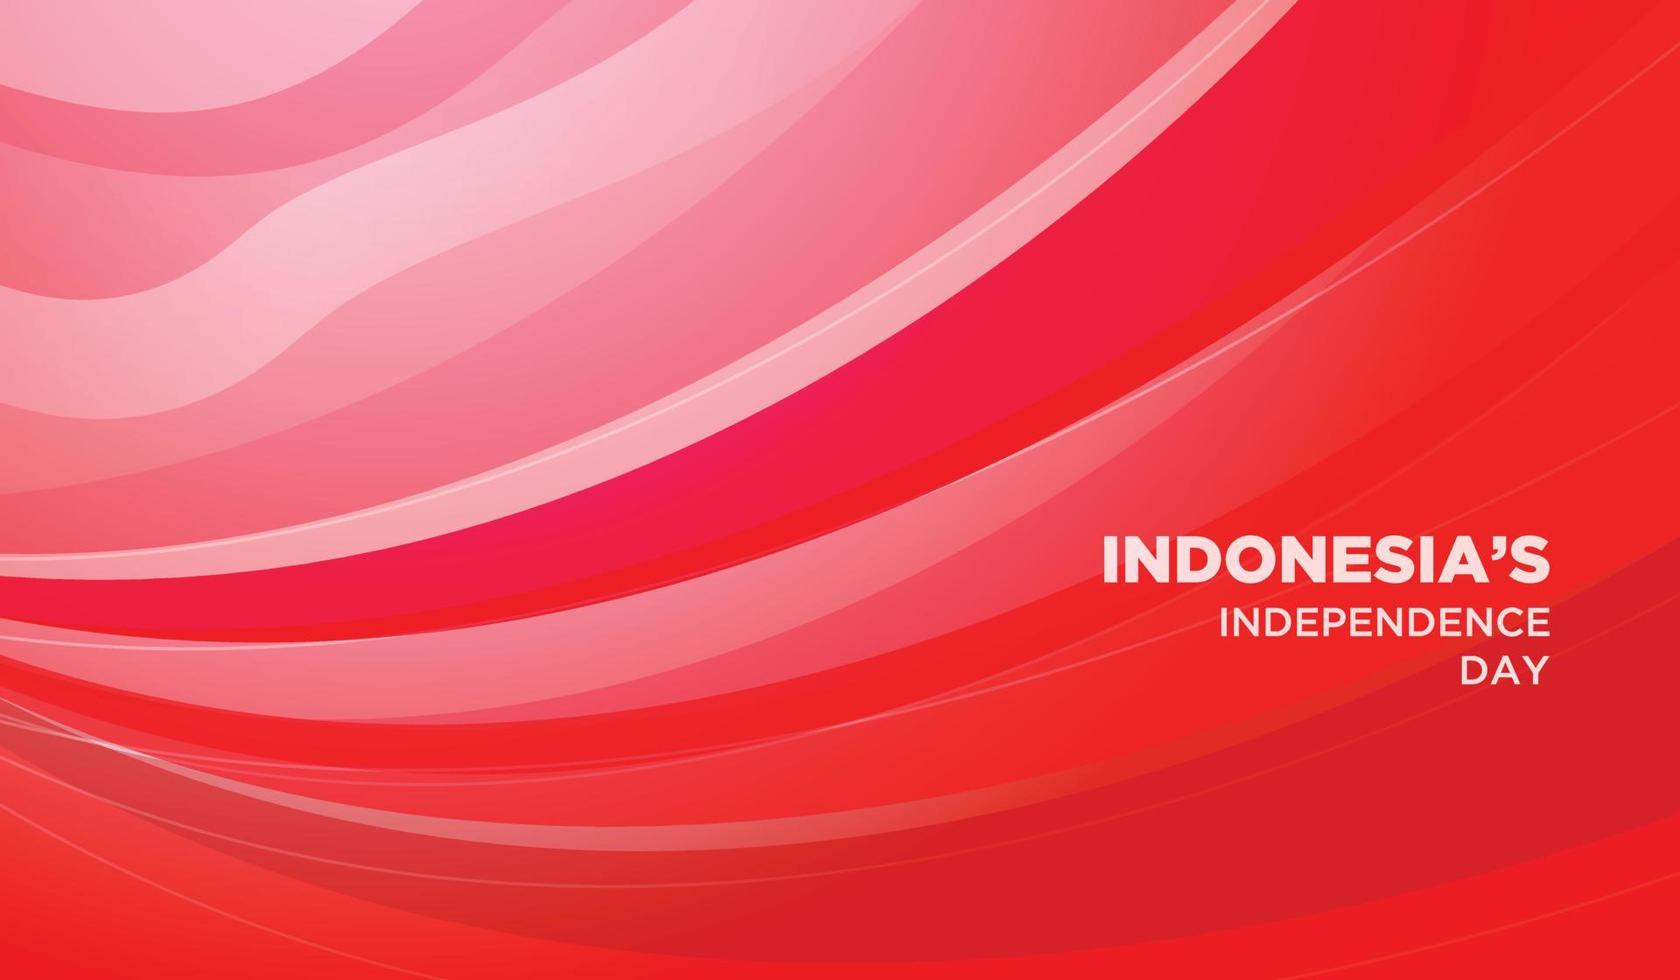 antecedentes del día de la independencia de indonesia. fondo rojo y blanco abstracto. vector